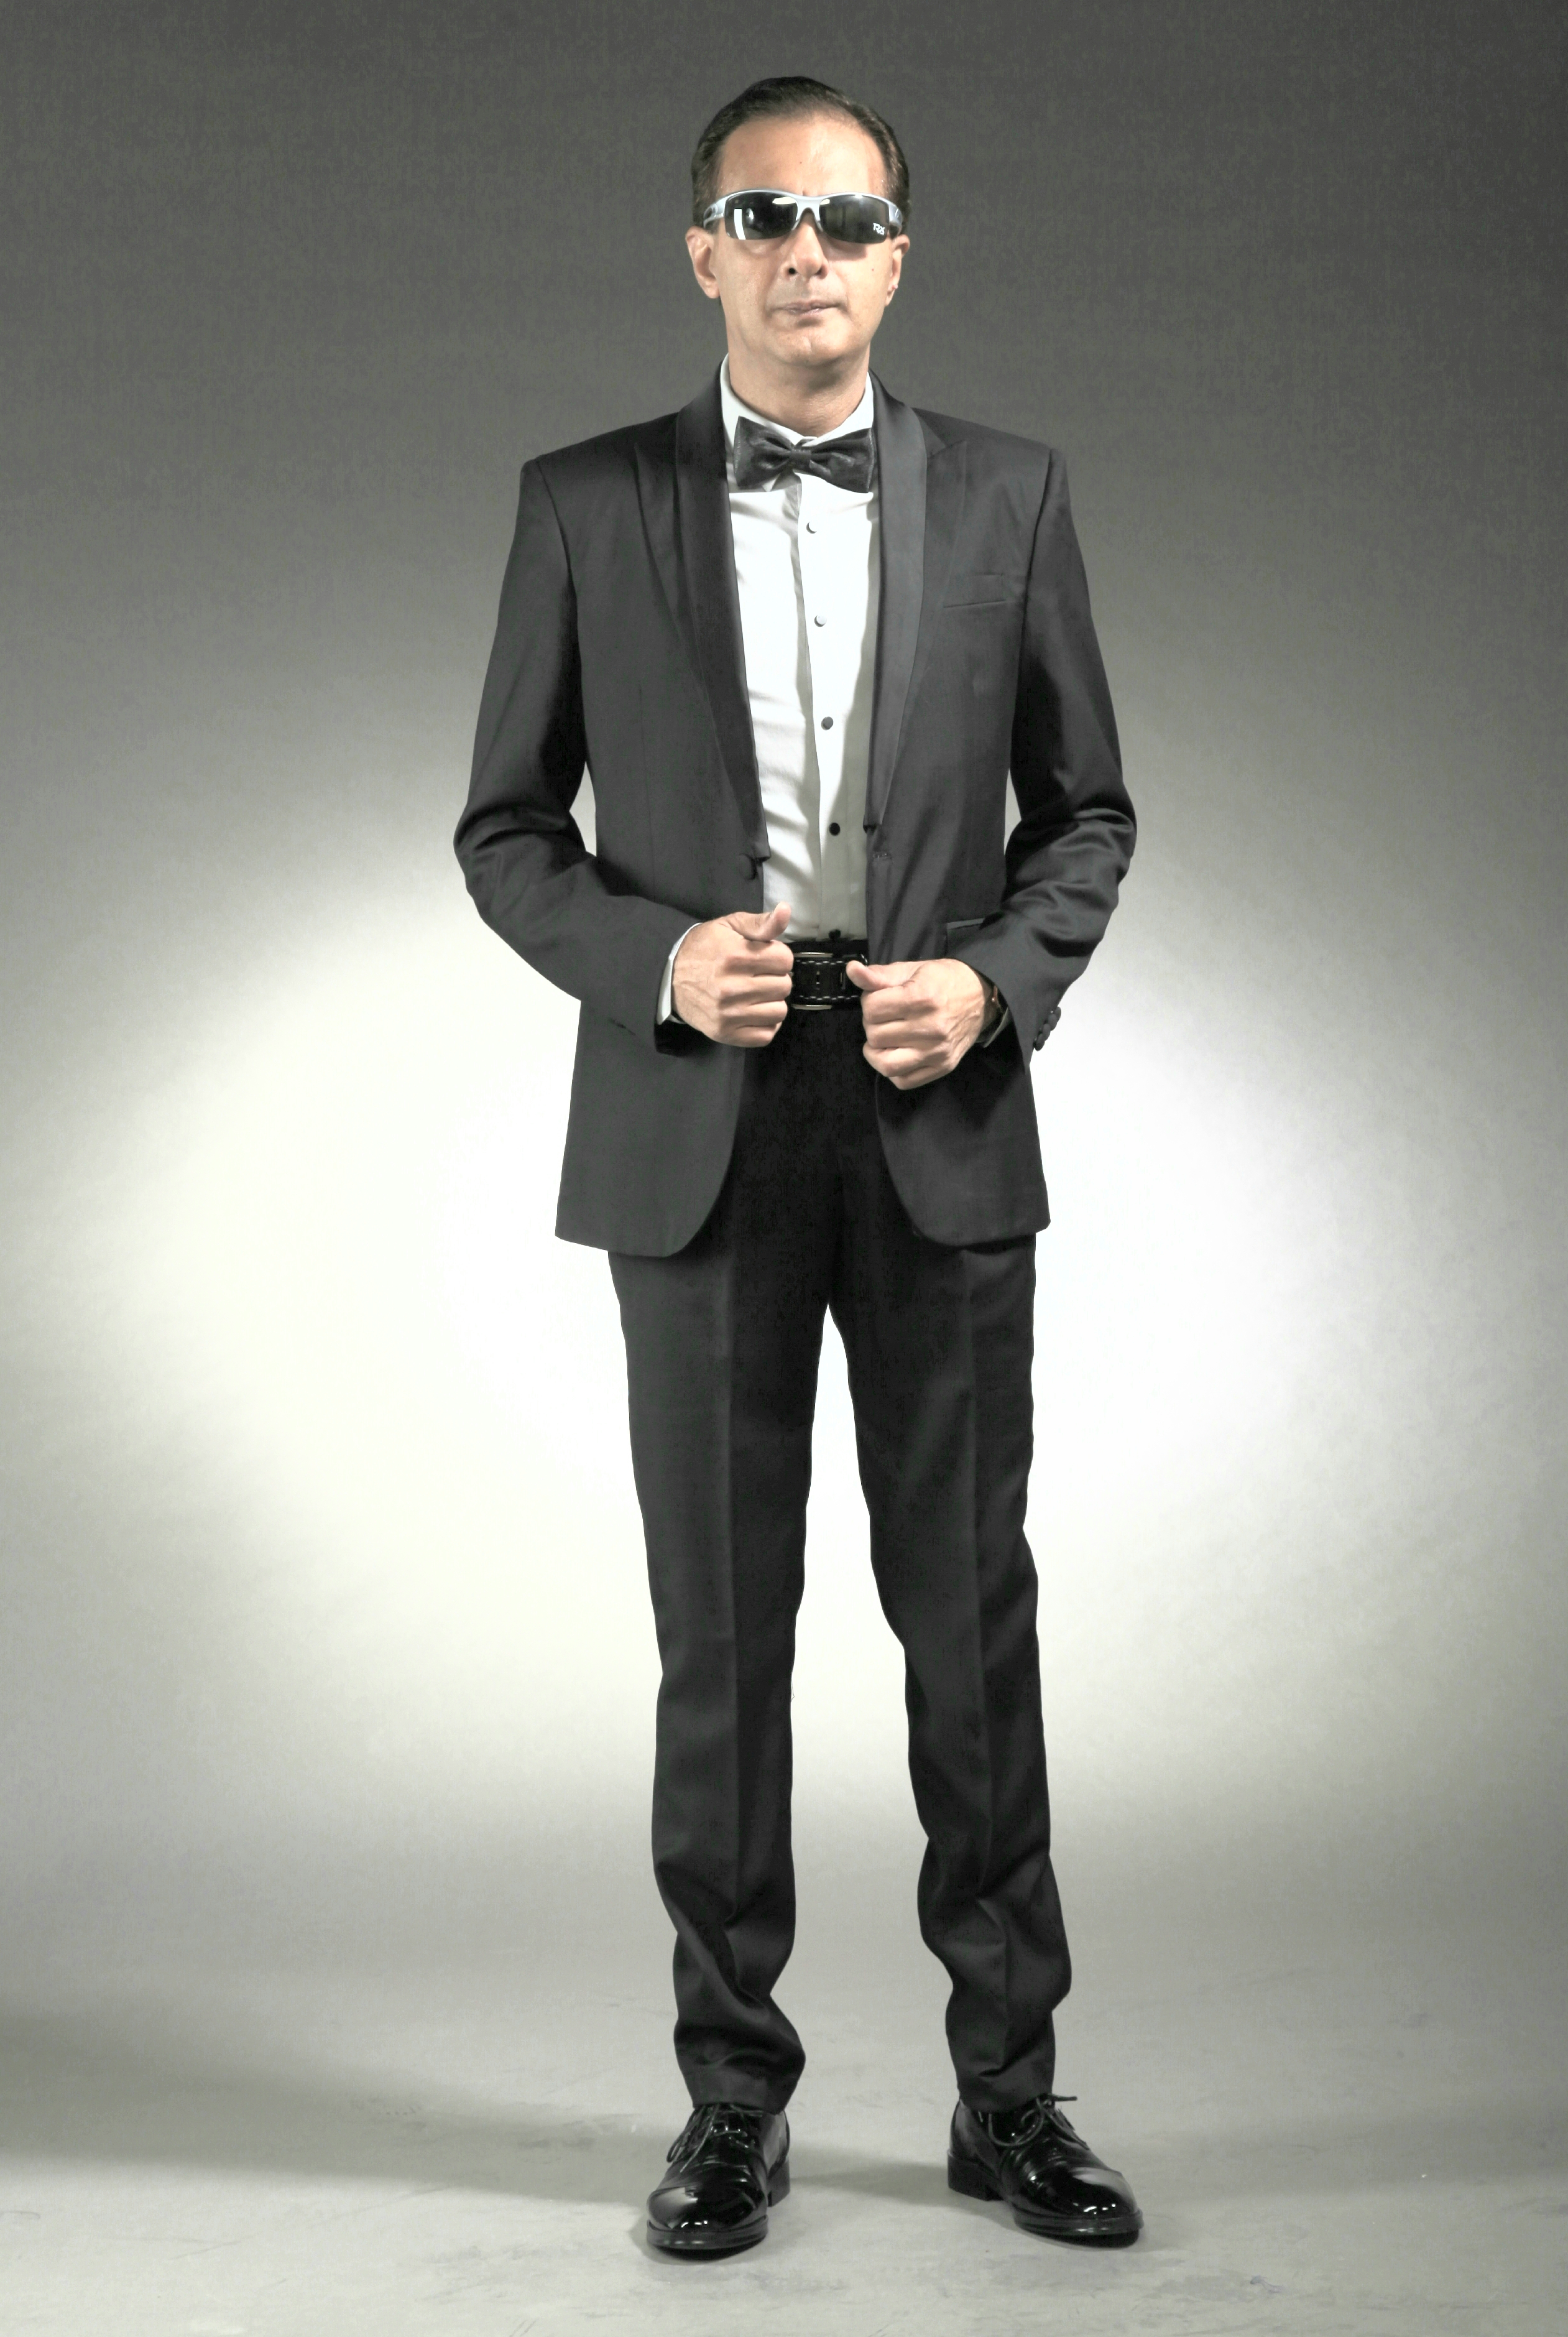 Mst 5040 01 Rent Rental Hire Tuxedo Suit Black Tie Suit Designer Suits Shop Tailor